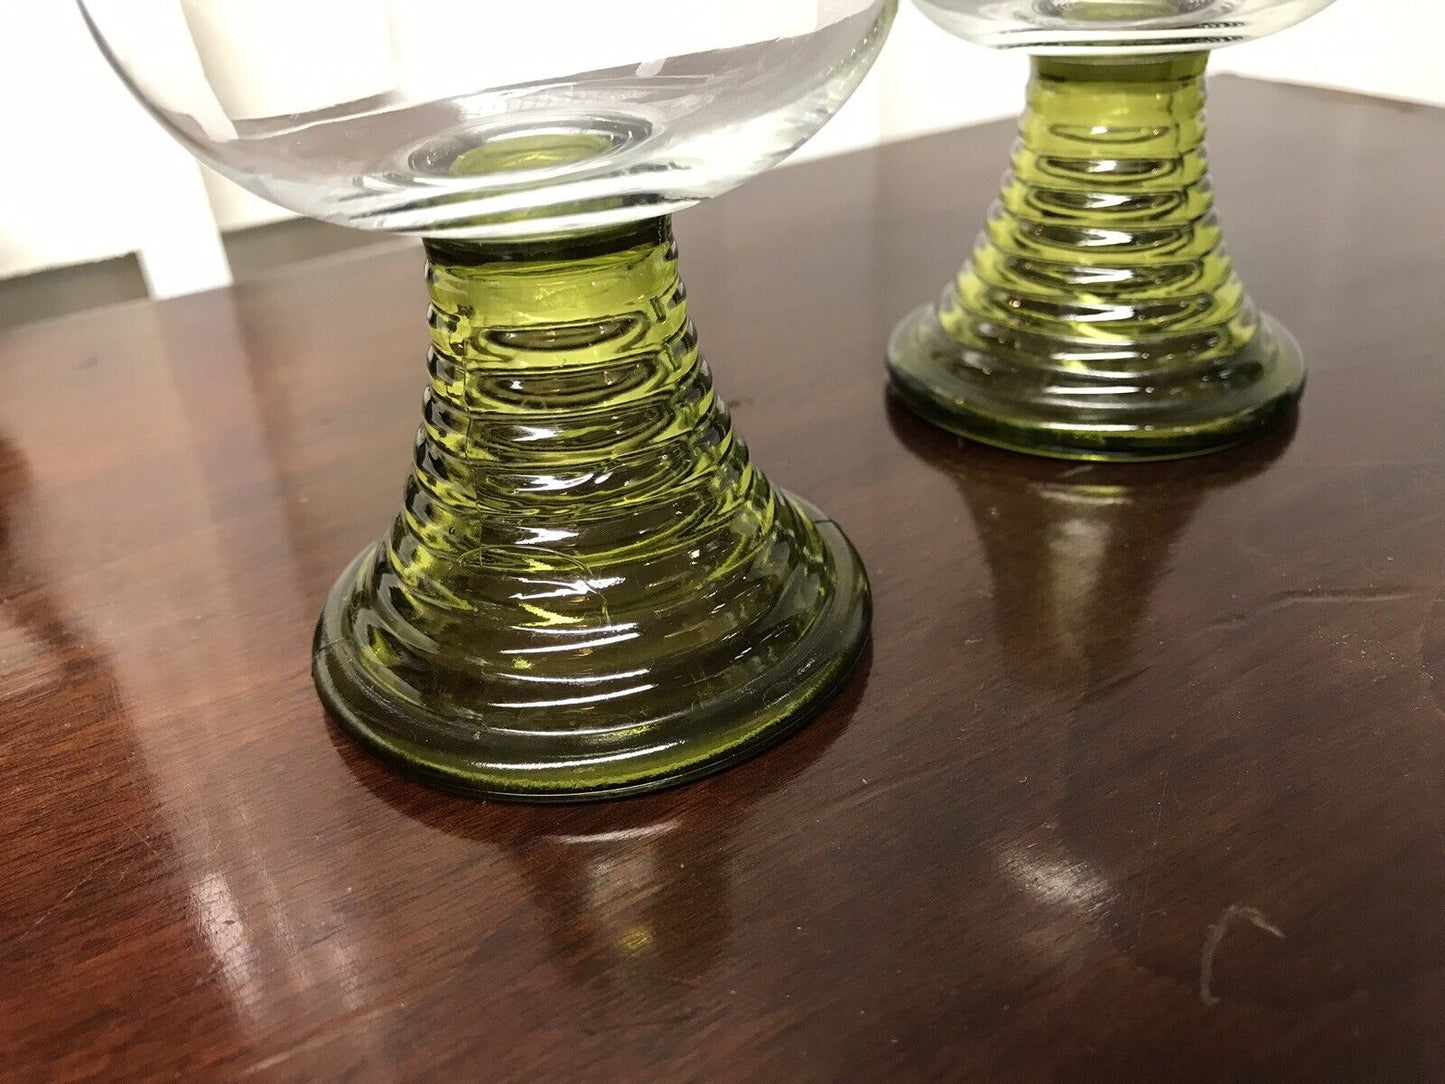 Vintage Wine Glasses With Beehive Stem.